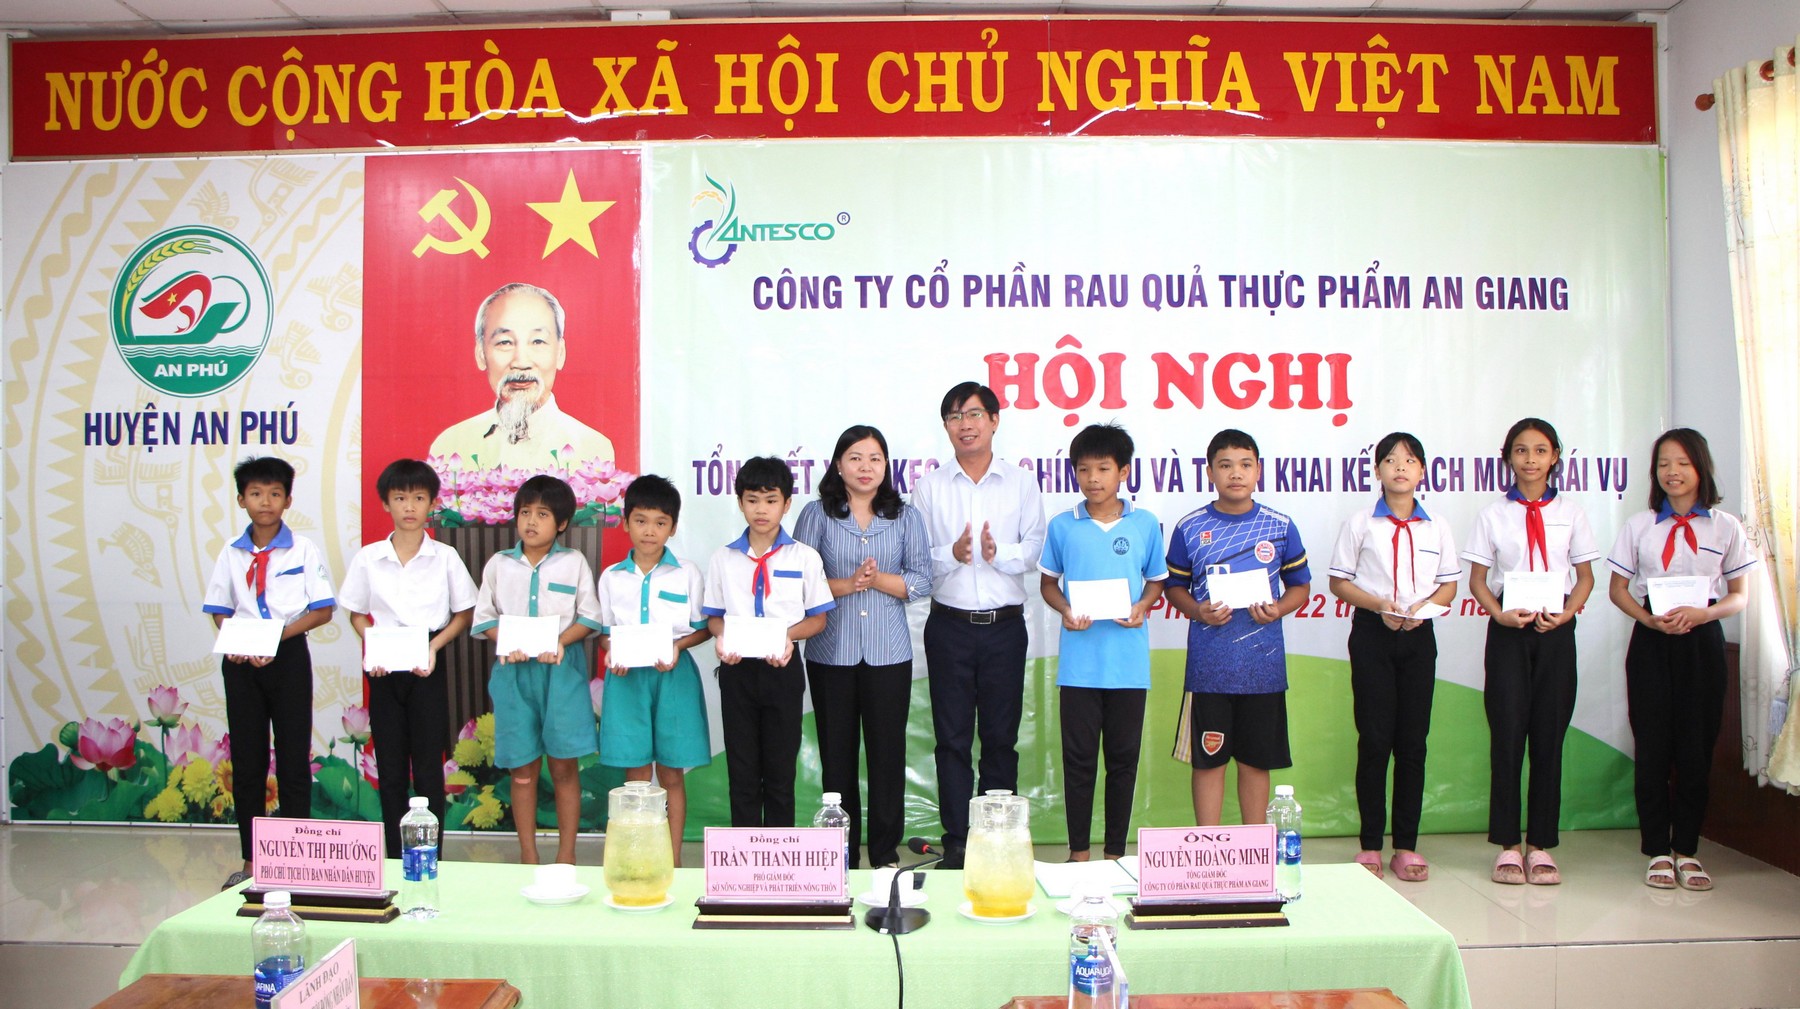 Tổng Giám đốc Công ty Antesco Nguyễn Hoàng Minh và Phó Chủ tịch UBND huyện An Phú Nguyễn Thị Phướng trao quà học bổng cho học sinh